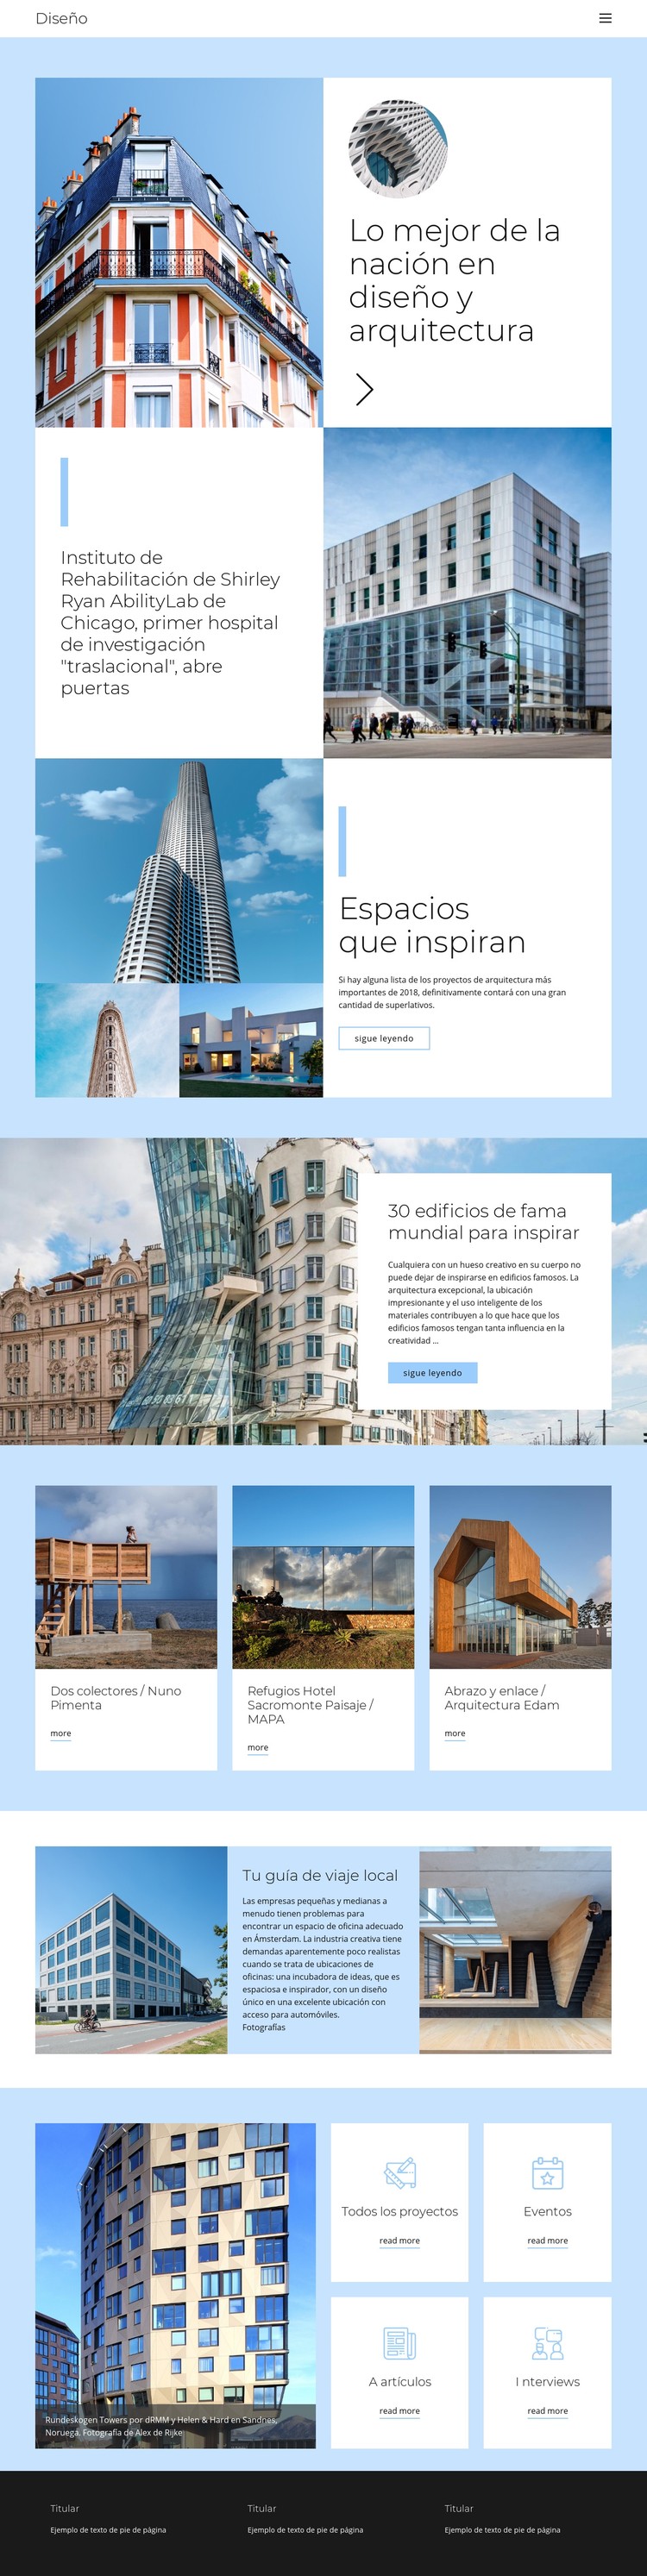 Guía de arquitectura de la ciudad Plantilla CSS